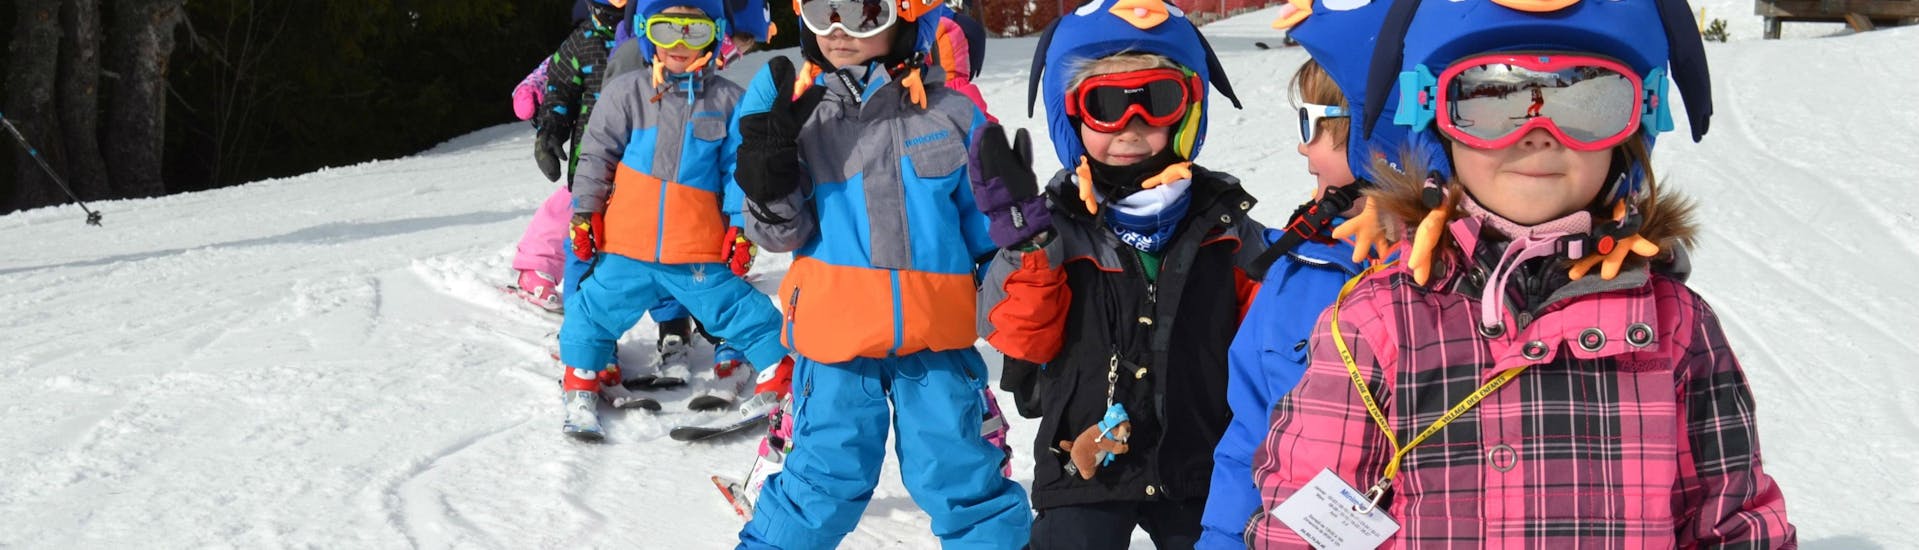 Cours de ski pour Enfants (5-17 ans) - Vacances février.